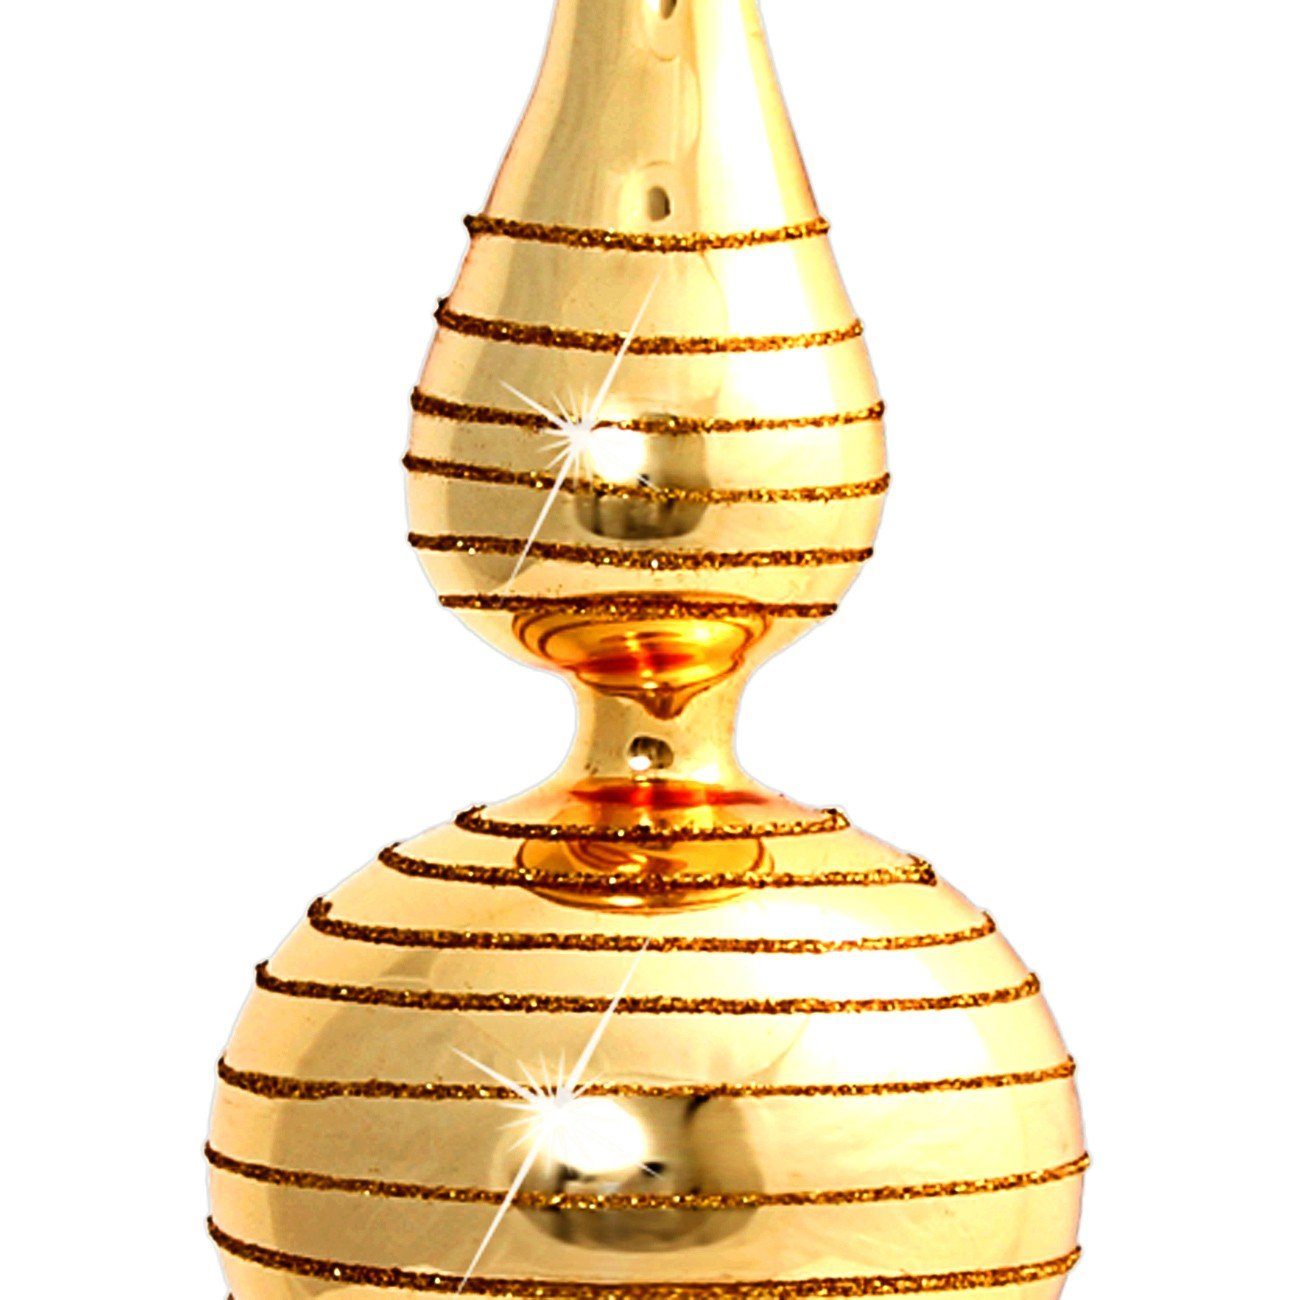 Christbaumspitze H:29cm Glitterdekor / Klassische SIKORA mit Glas Christbaumspitze gold aus SP2G -